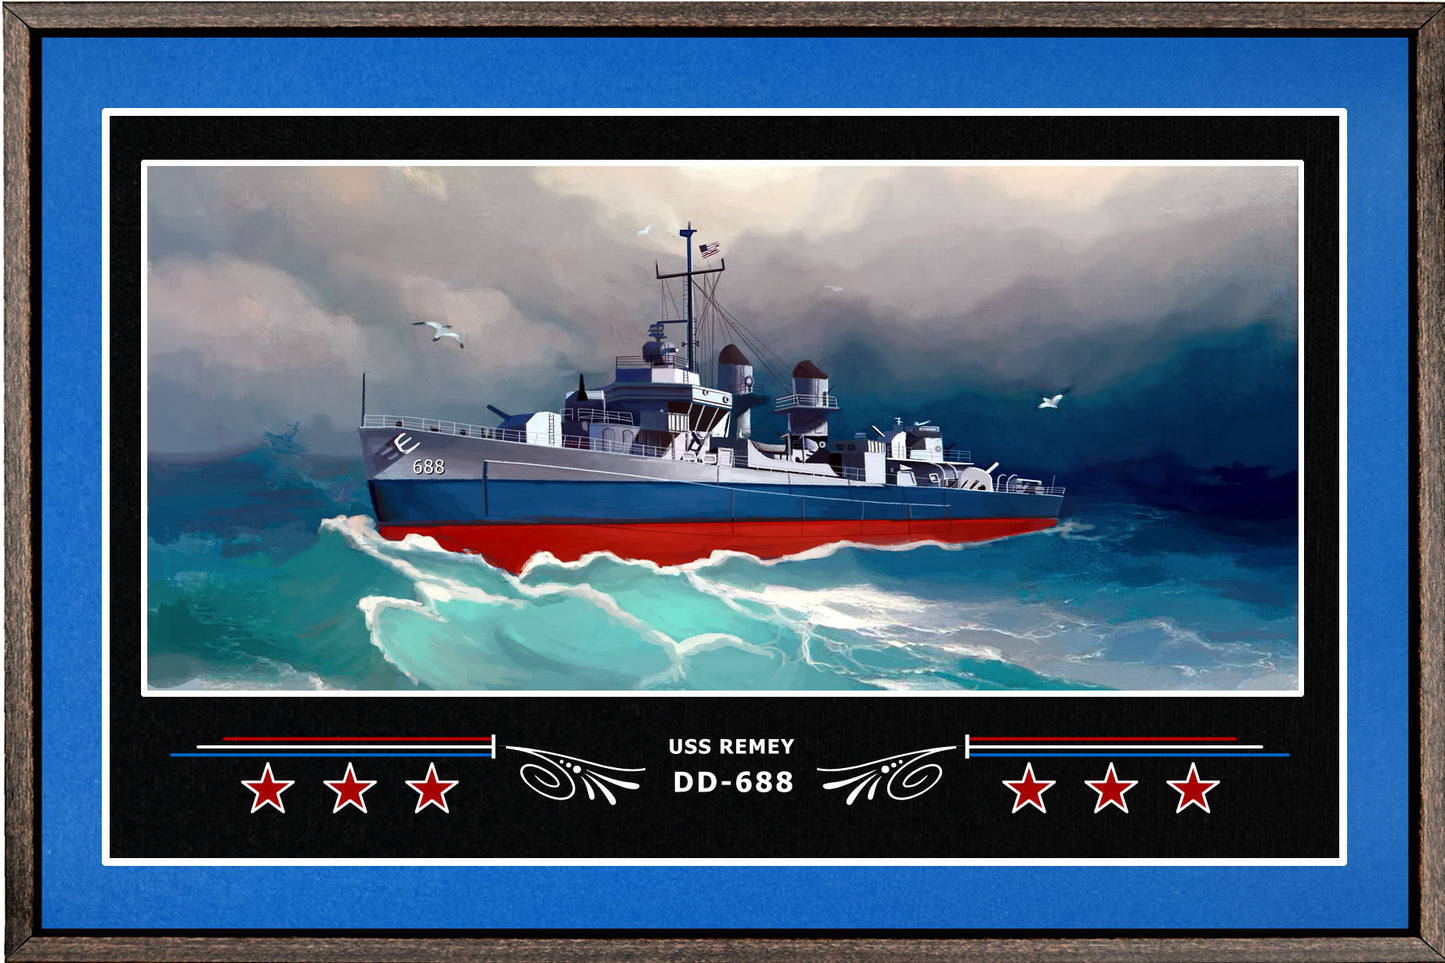 USS REMEY DD 688 BOX FRAMED CANVAS ART BLUE